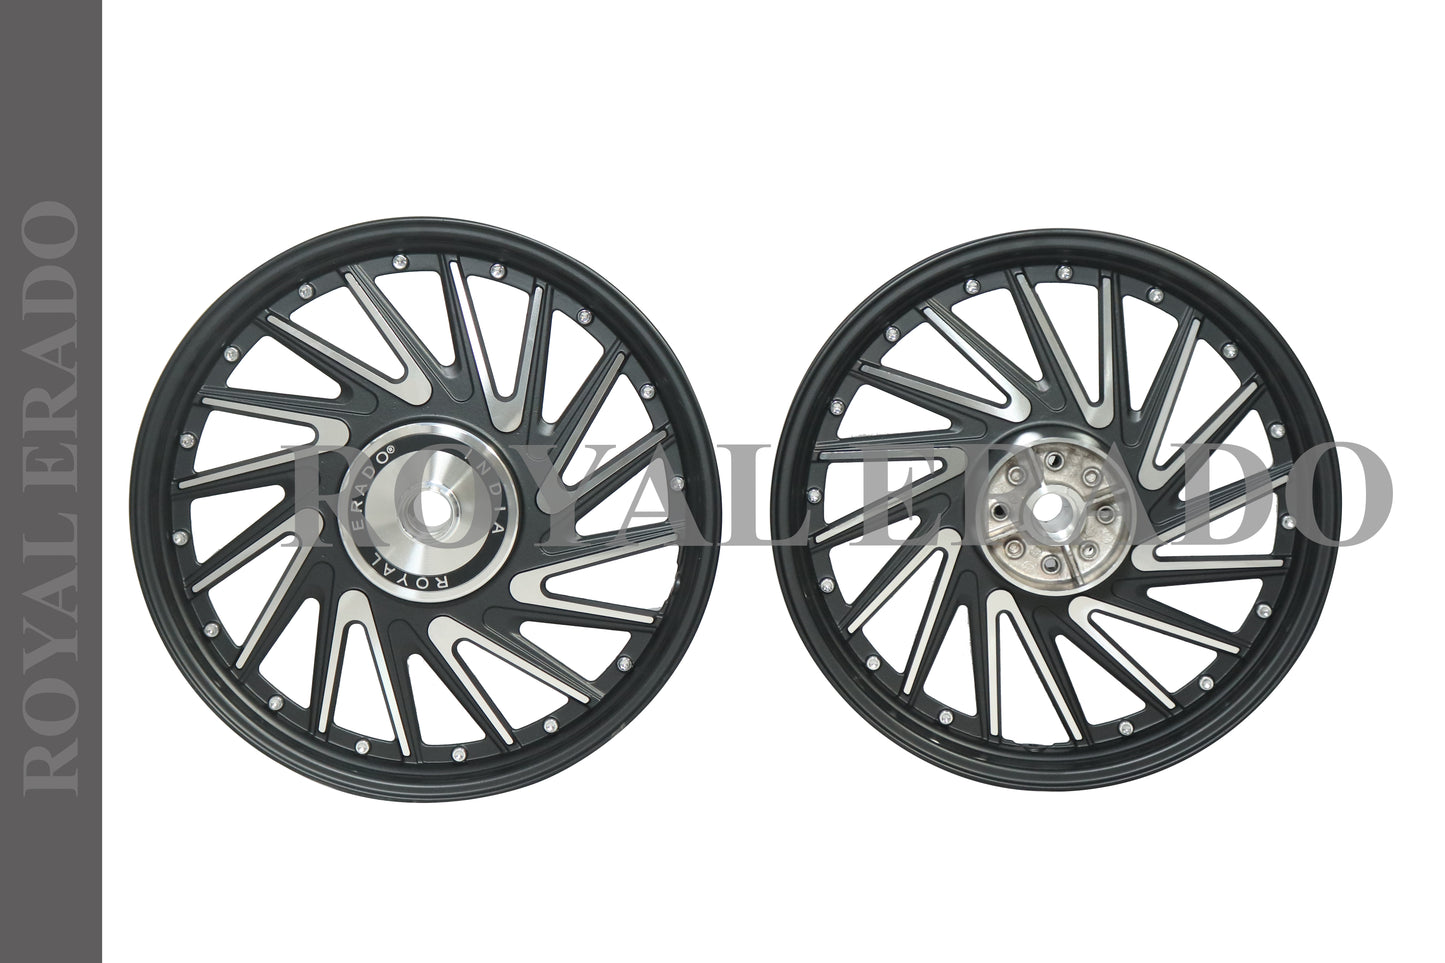 CROSS V design 16 SPOKES  Alloy Wheel set for classic single disc